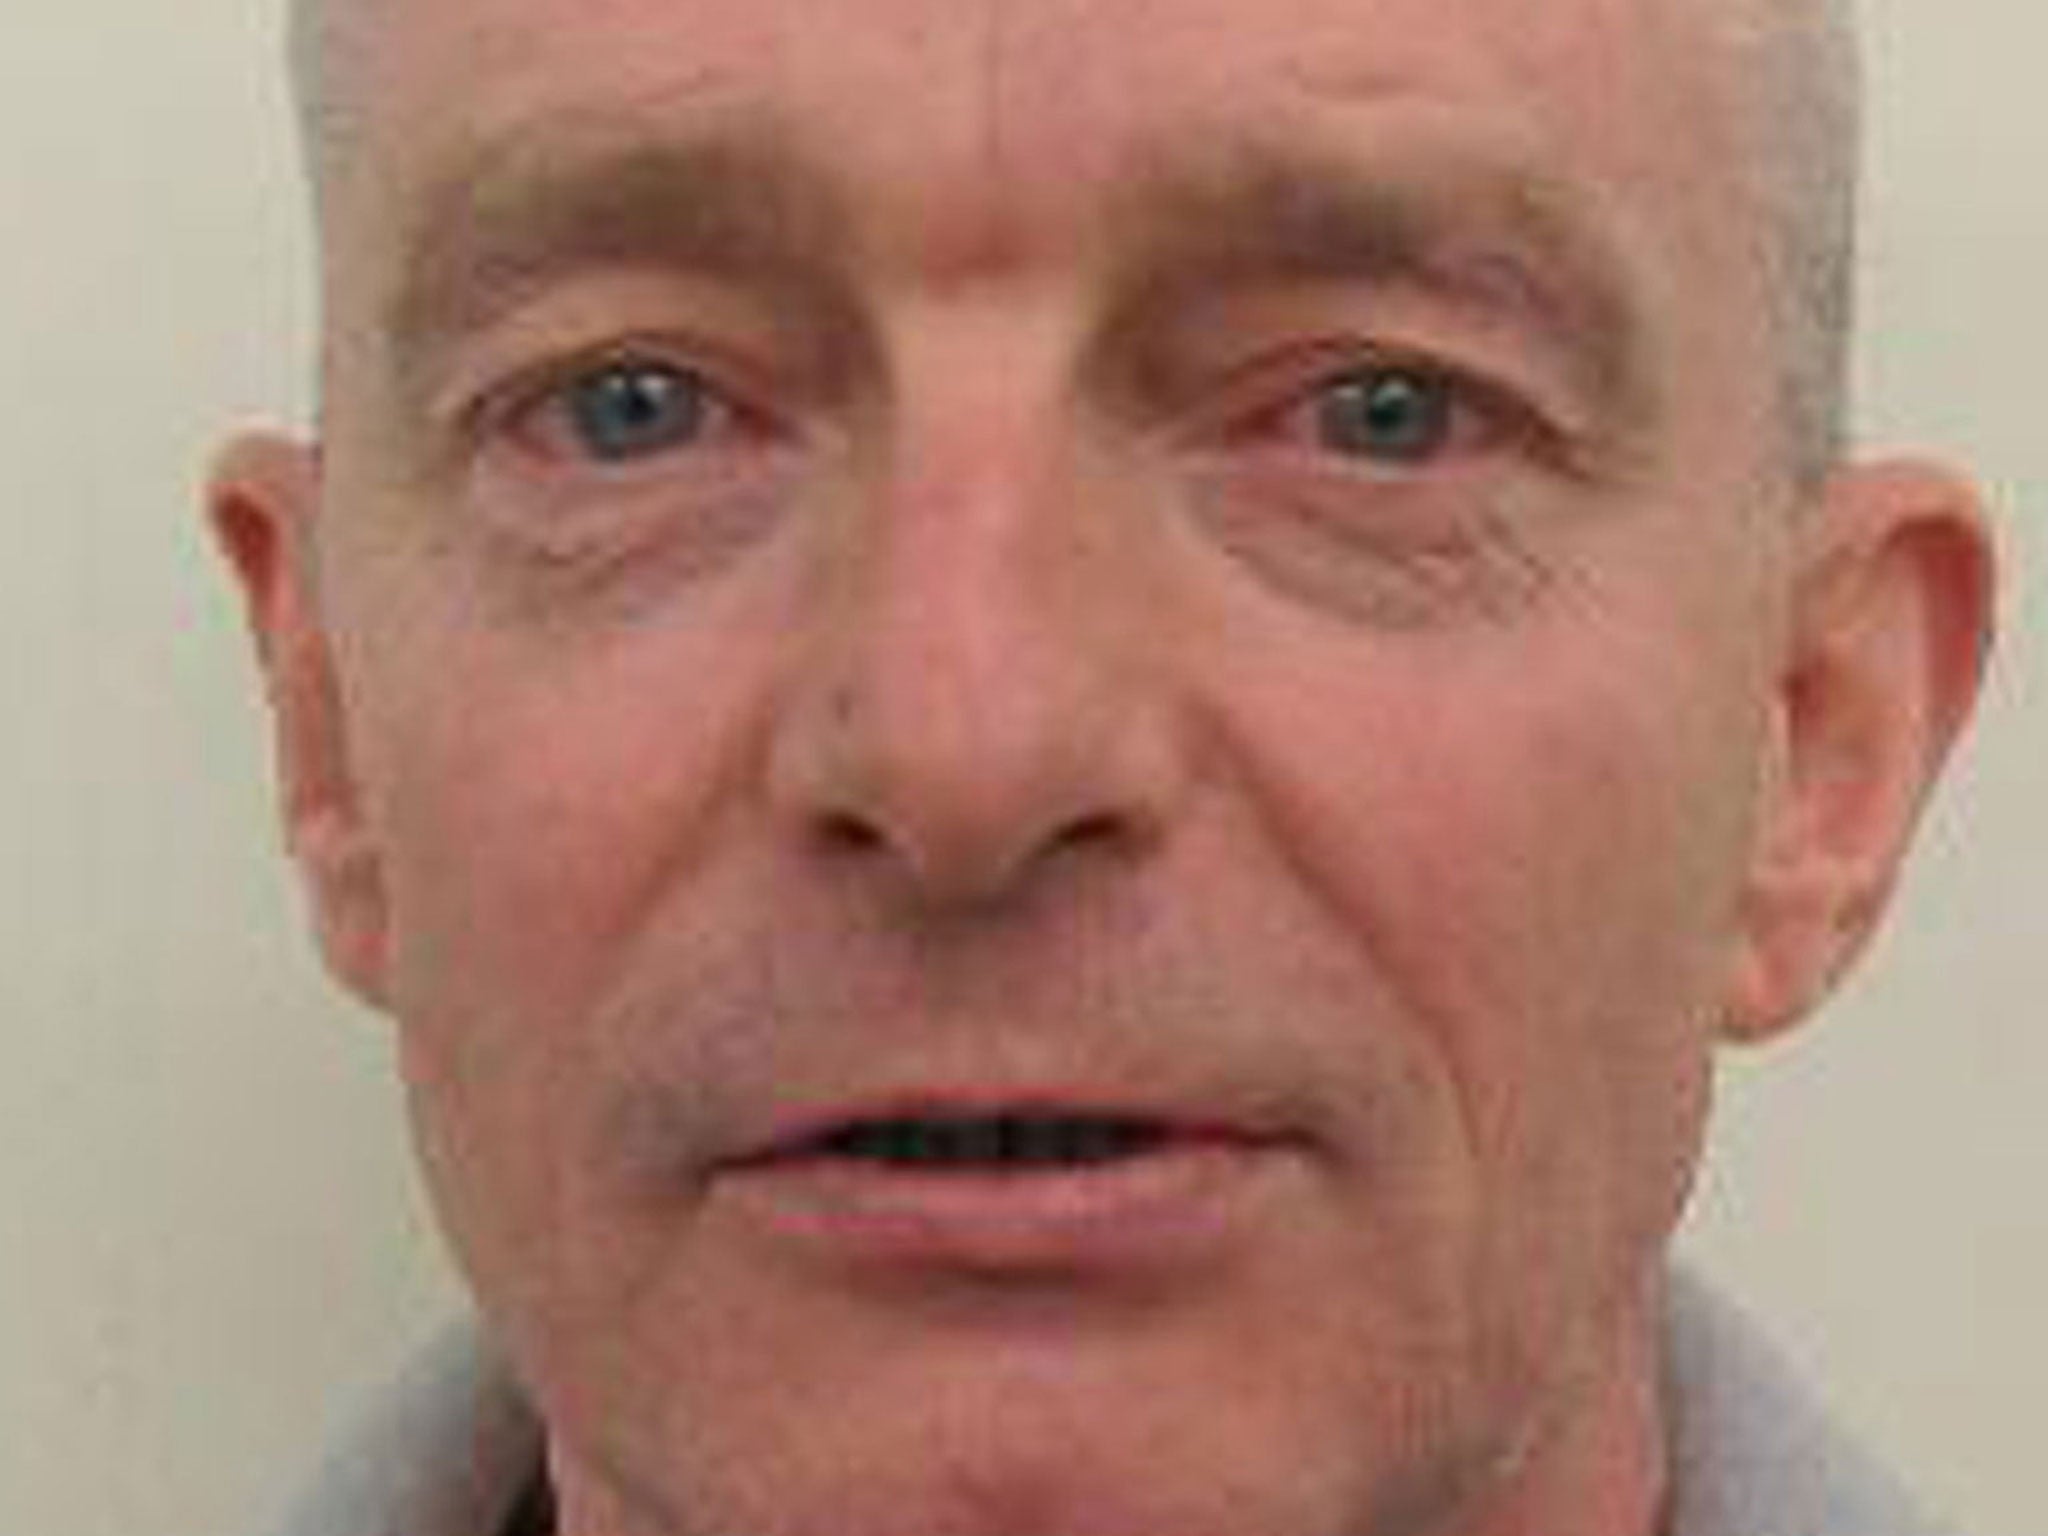 Ian John McLoughlin was arrested in London